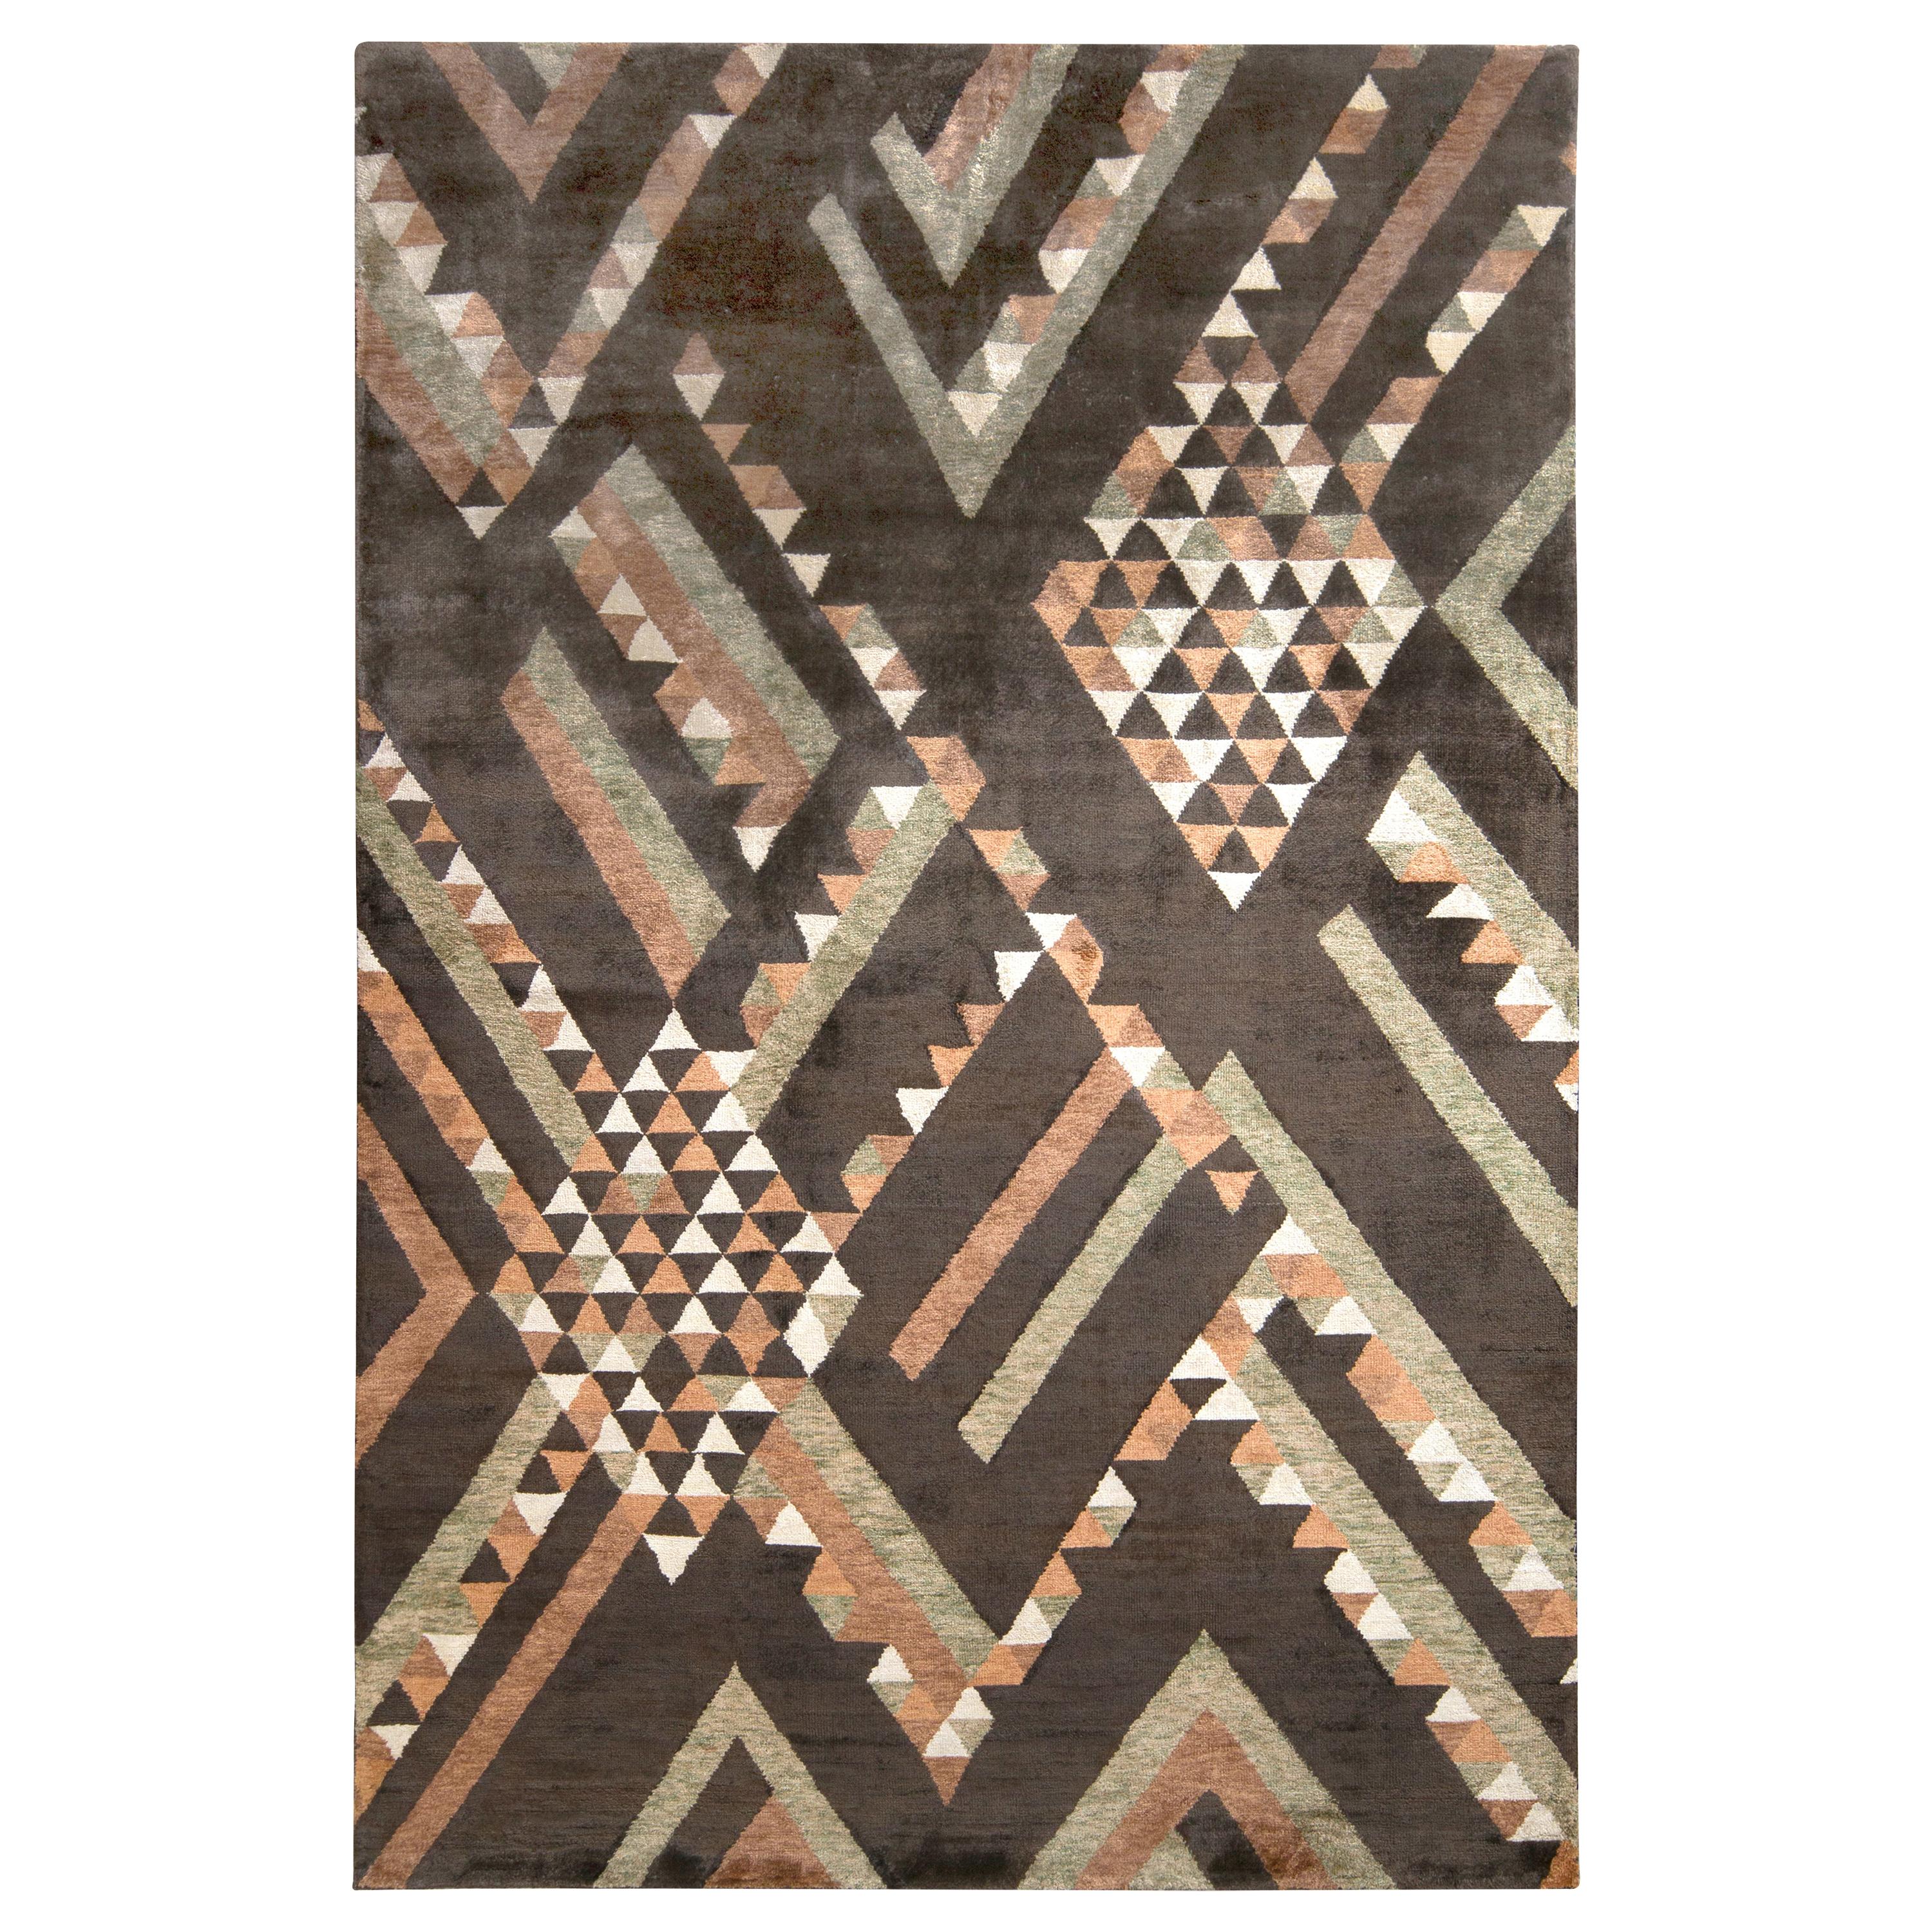 Rug & Kilim’s Scandinavian Style Rug in Brown Geometric Pattern